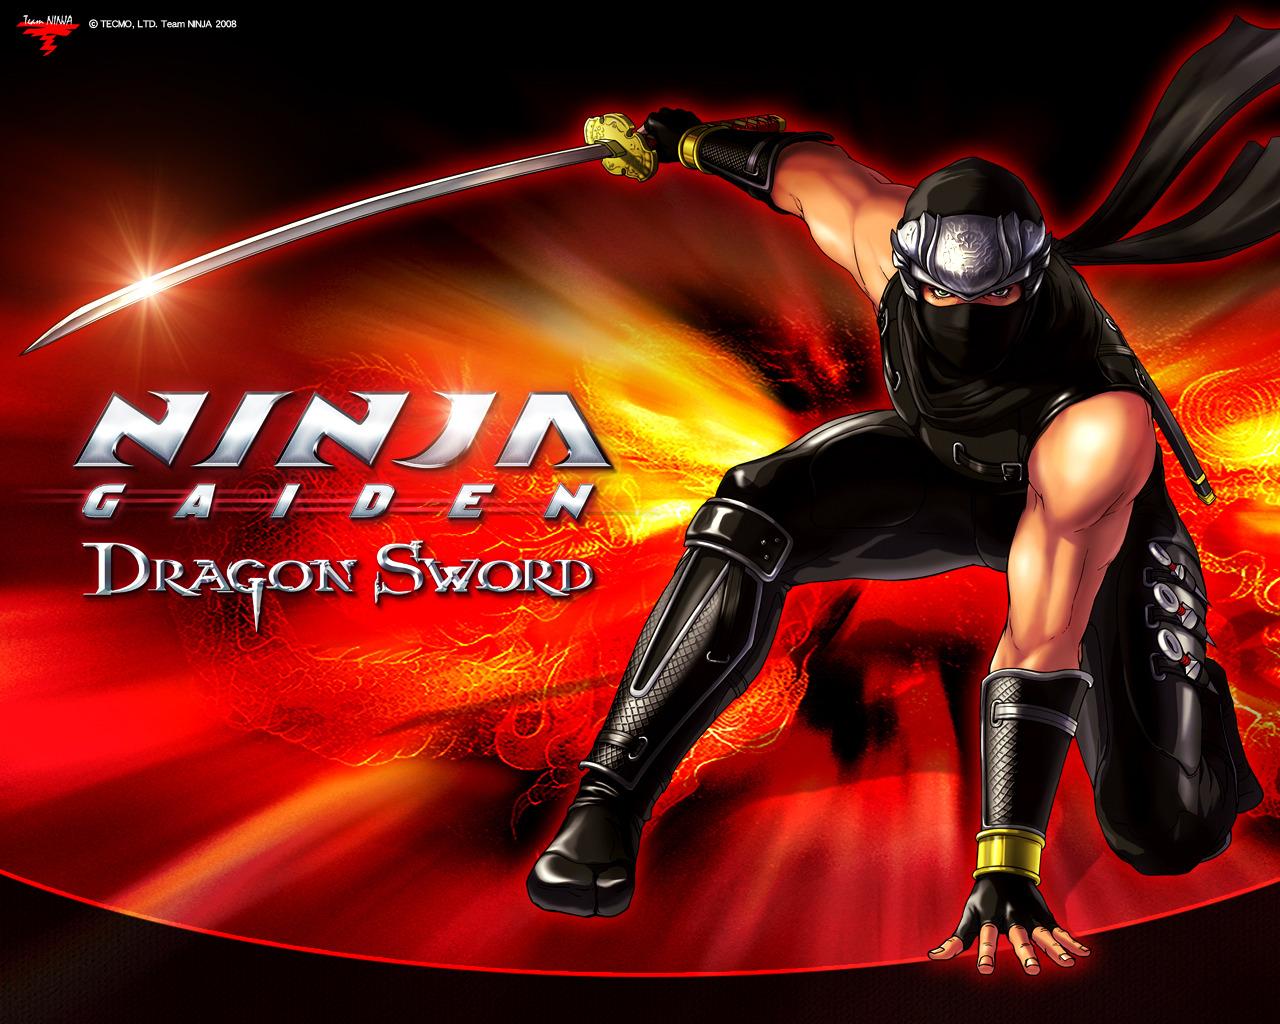 1280 x 1024 · jpeg - Black ninja wallpapers |Funny & Amazing Images